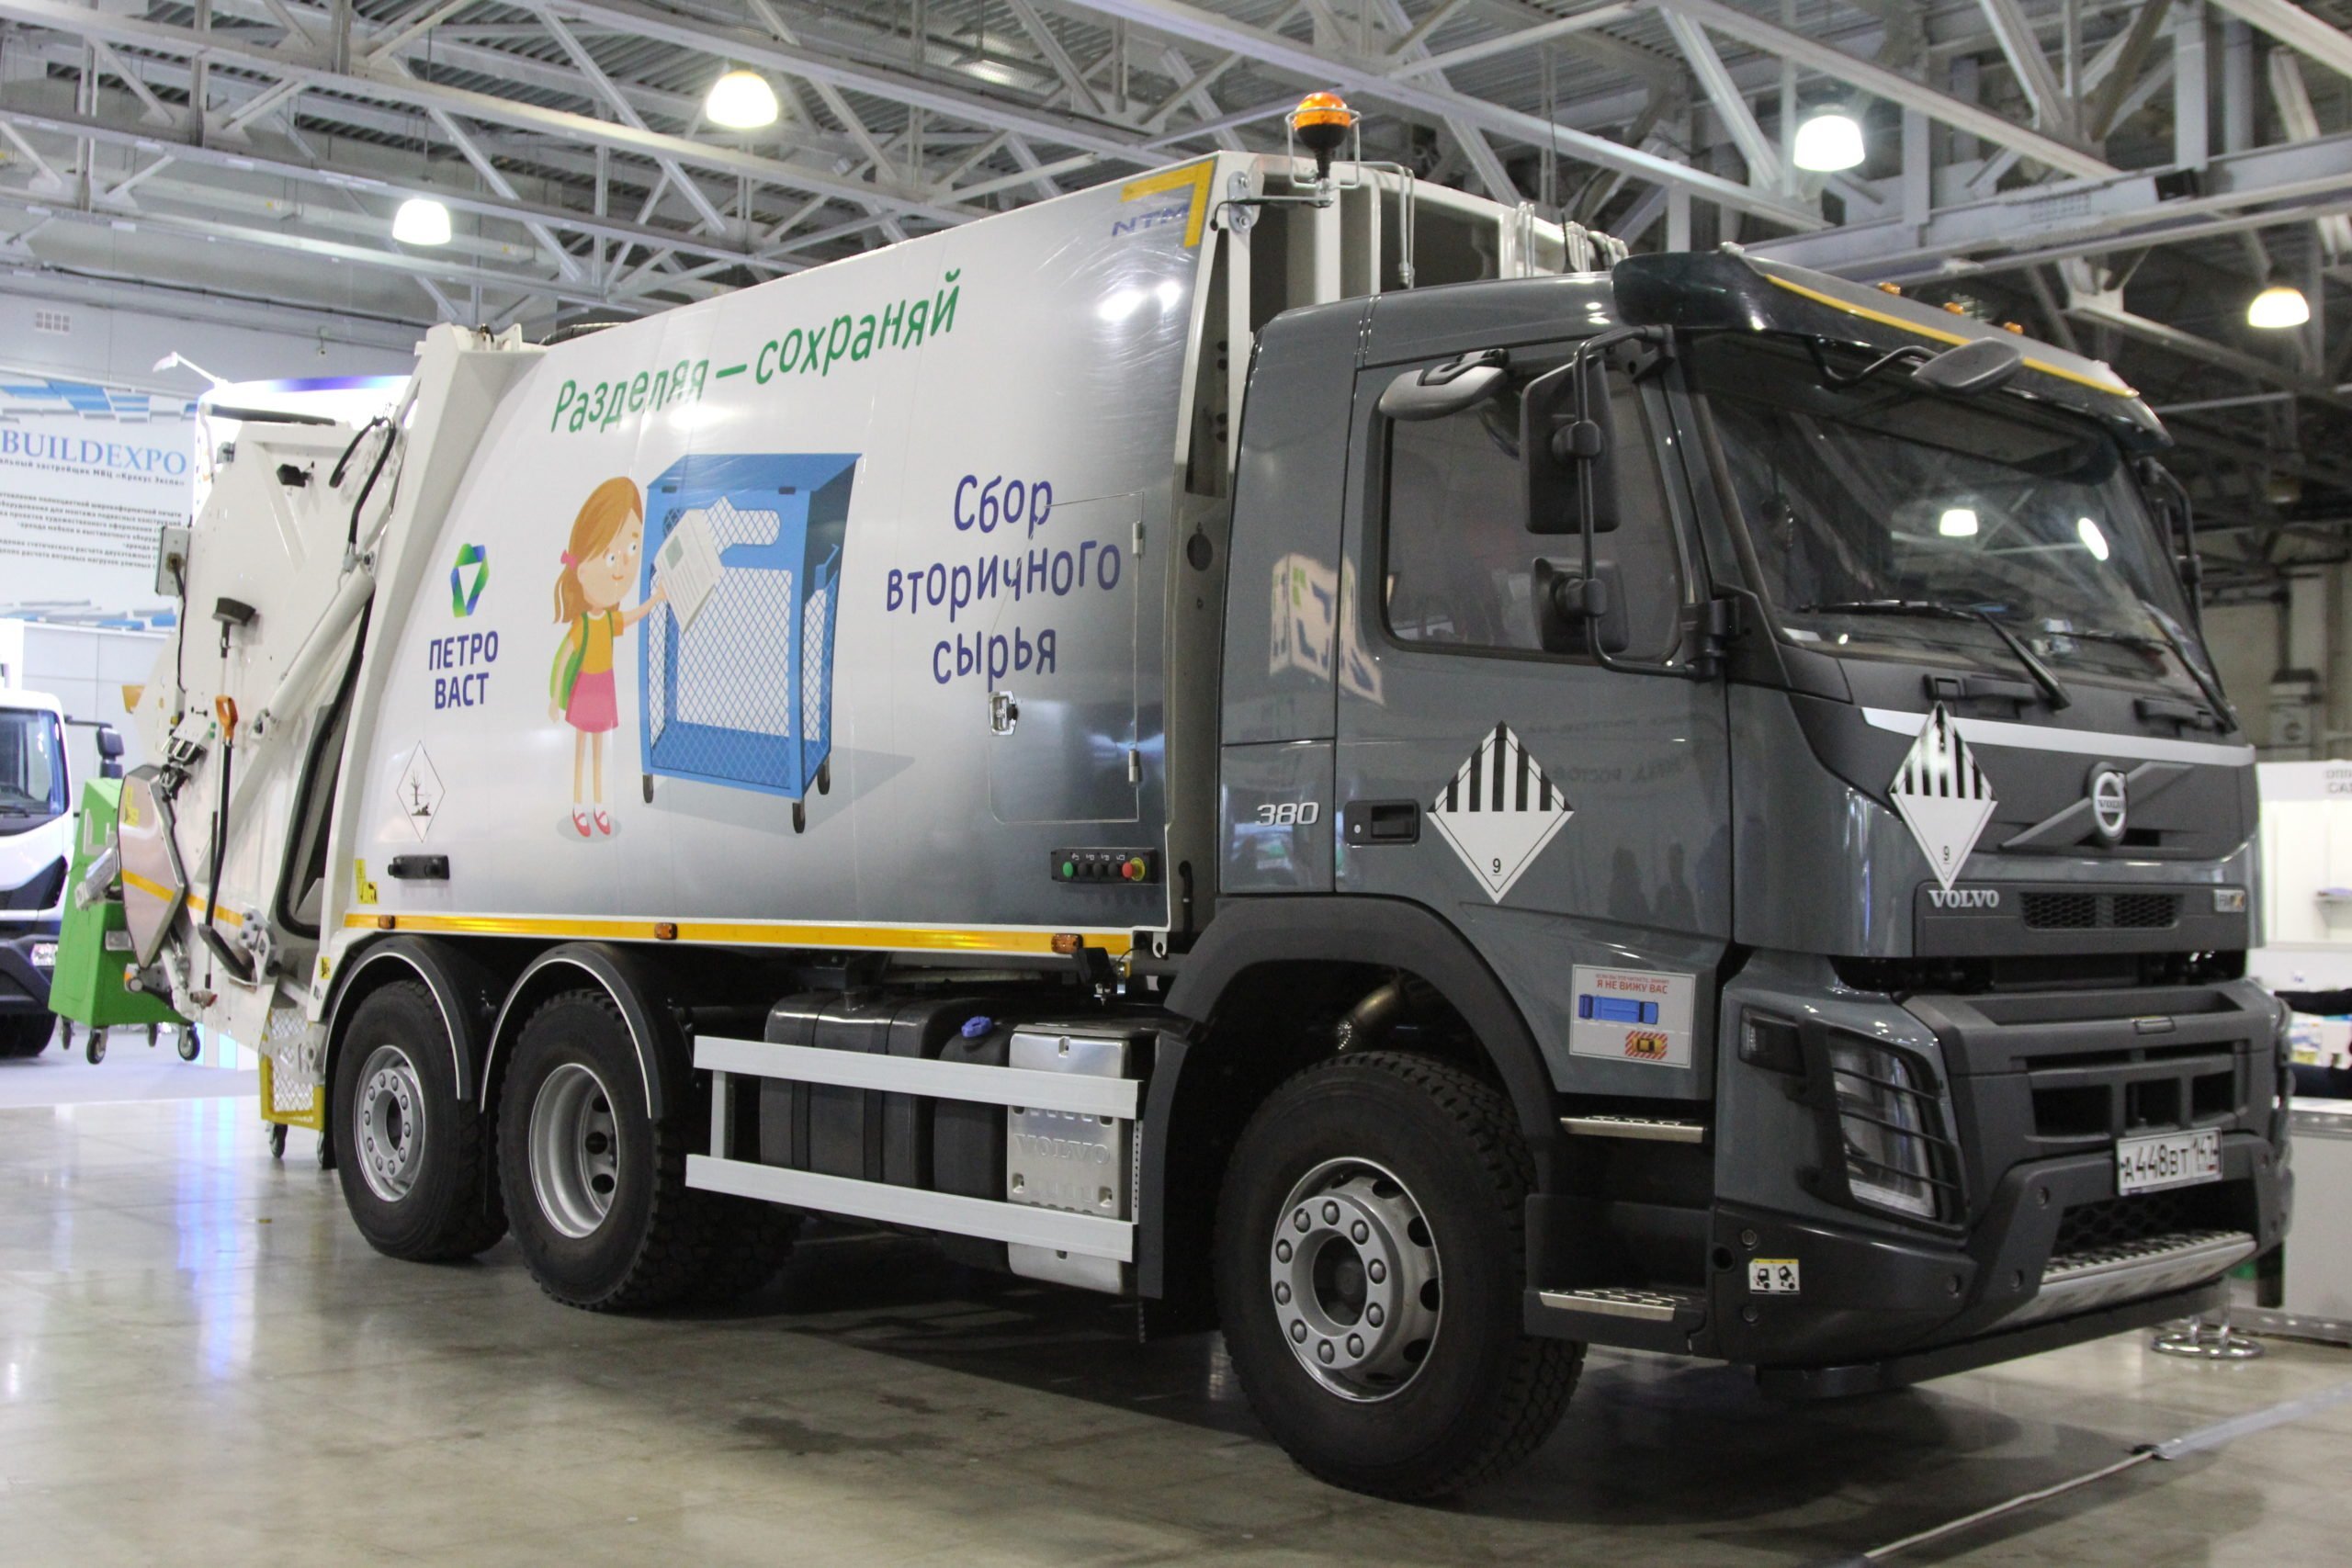 Разделяя сохраняй: финская компания NTM представила в России мусоровоз для раздельного сбора отходов